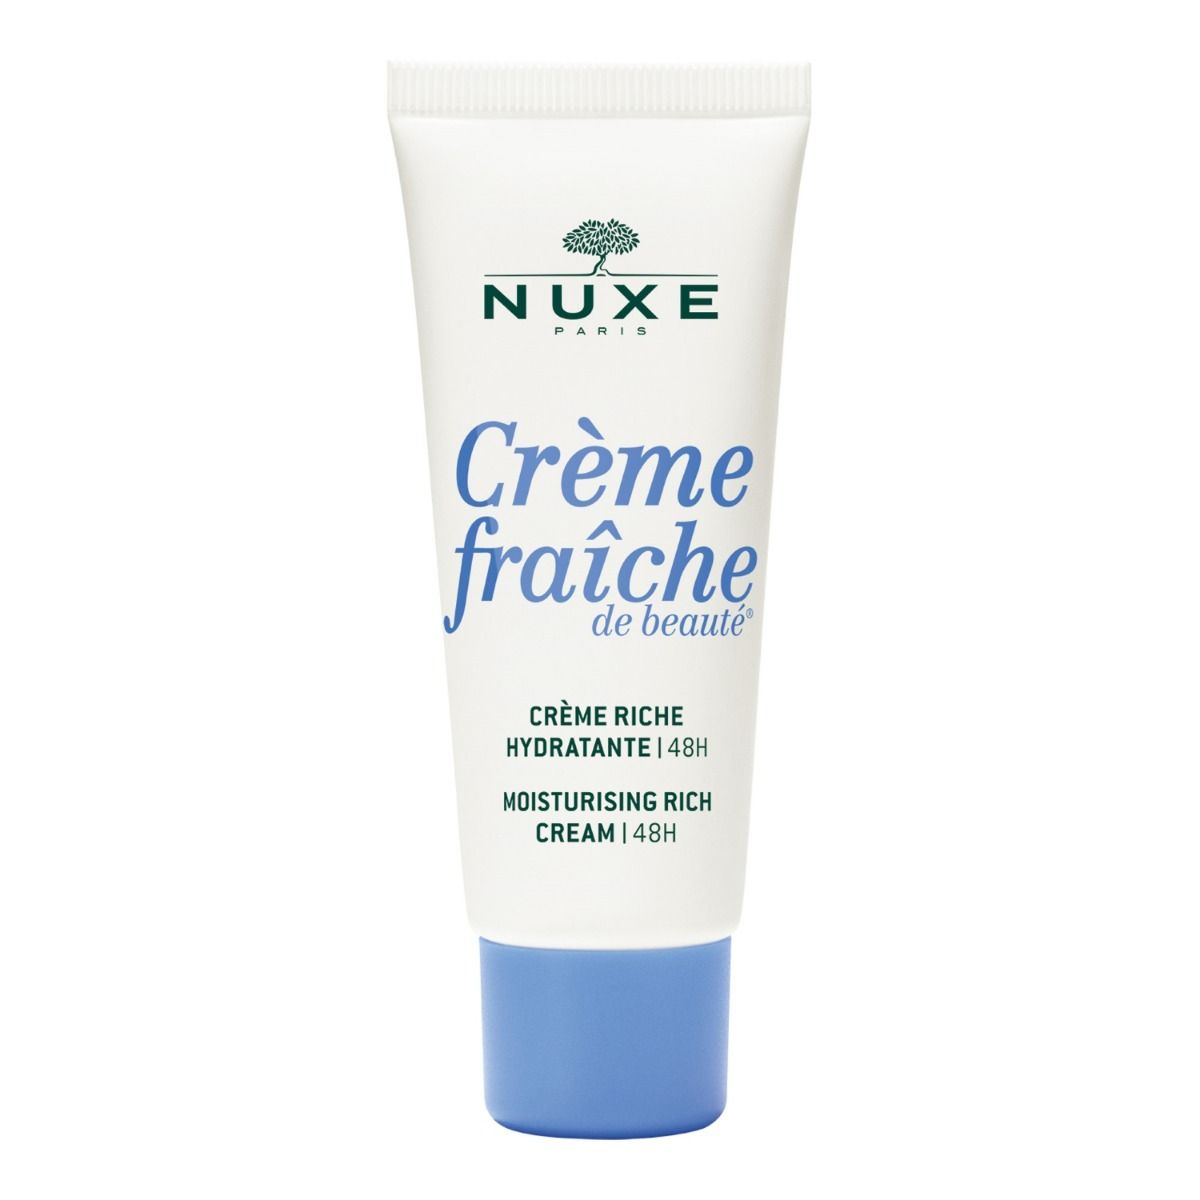 Nuxe Crème Fraîche de Beauté крем для лица, 30 ml